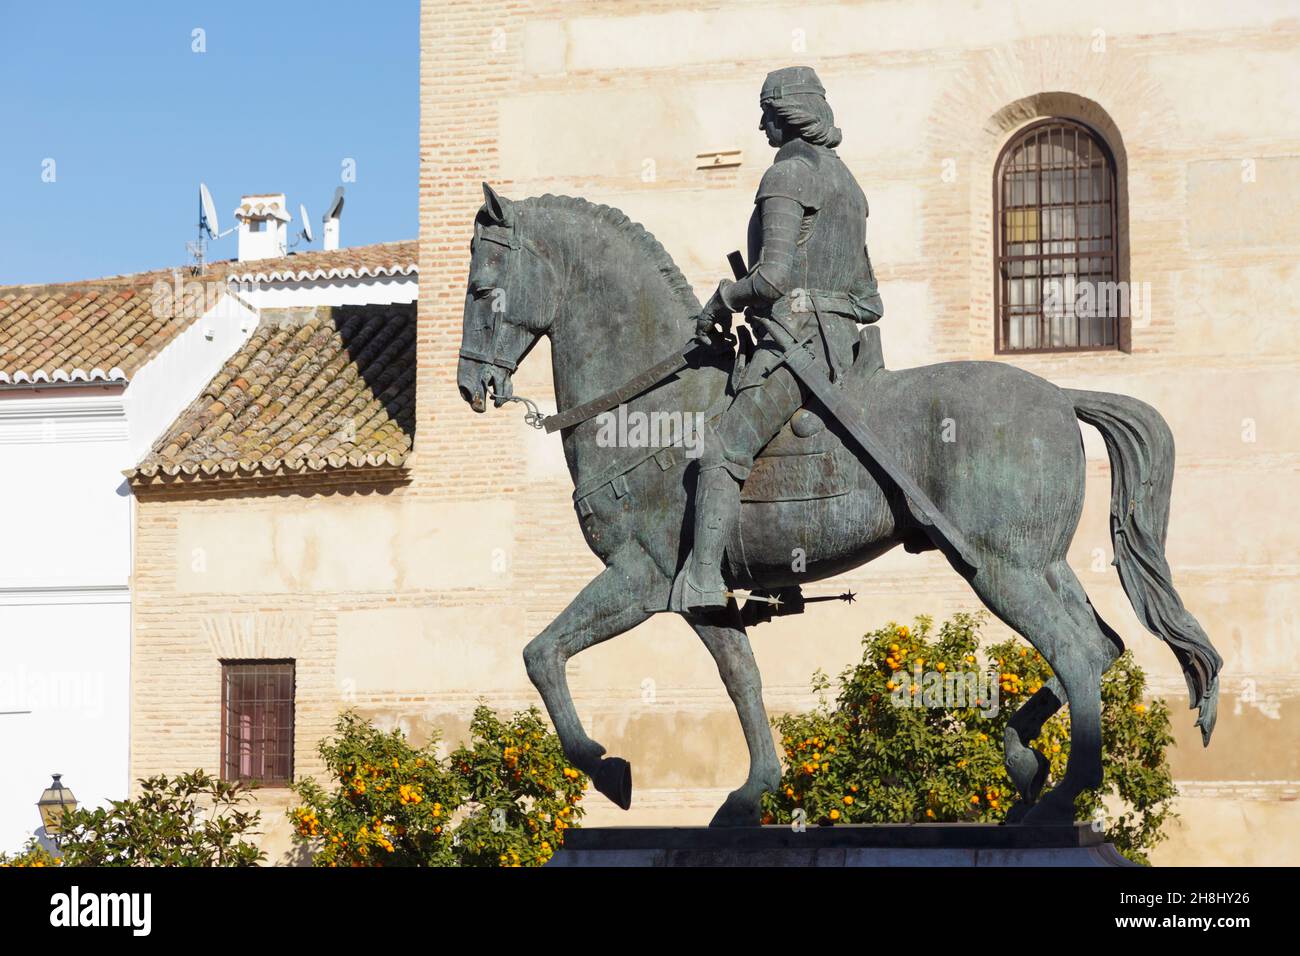 Antequera, province de Malaga, Andalousie, sud de l'Espagne.Statue équestre sur la Plaza Coso Viejo de Fernando I, 1379 - 1416, connue sous le nom d'El de Antequera, Banque D'Images